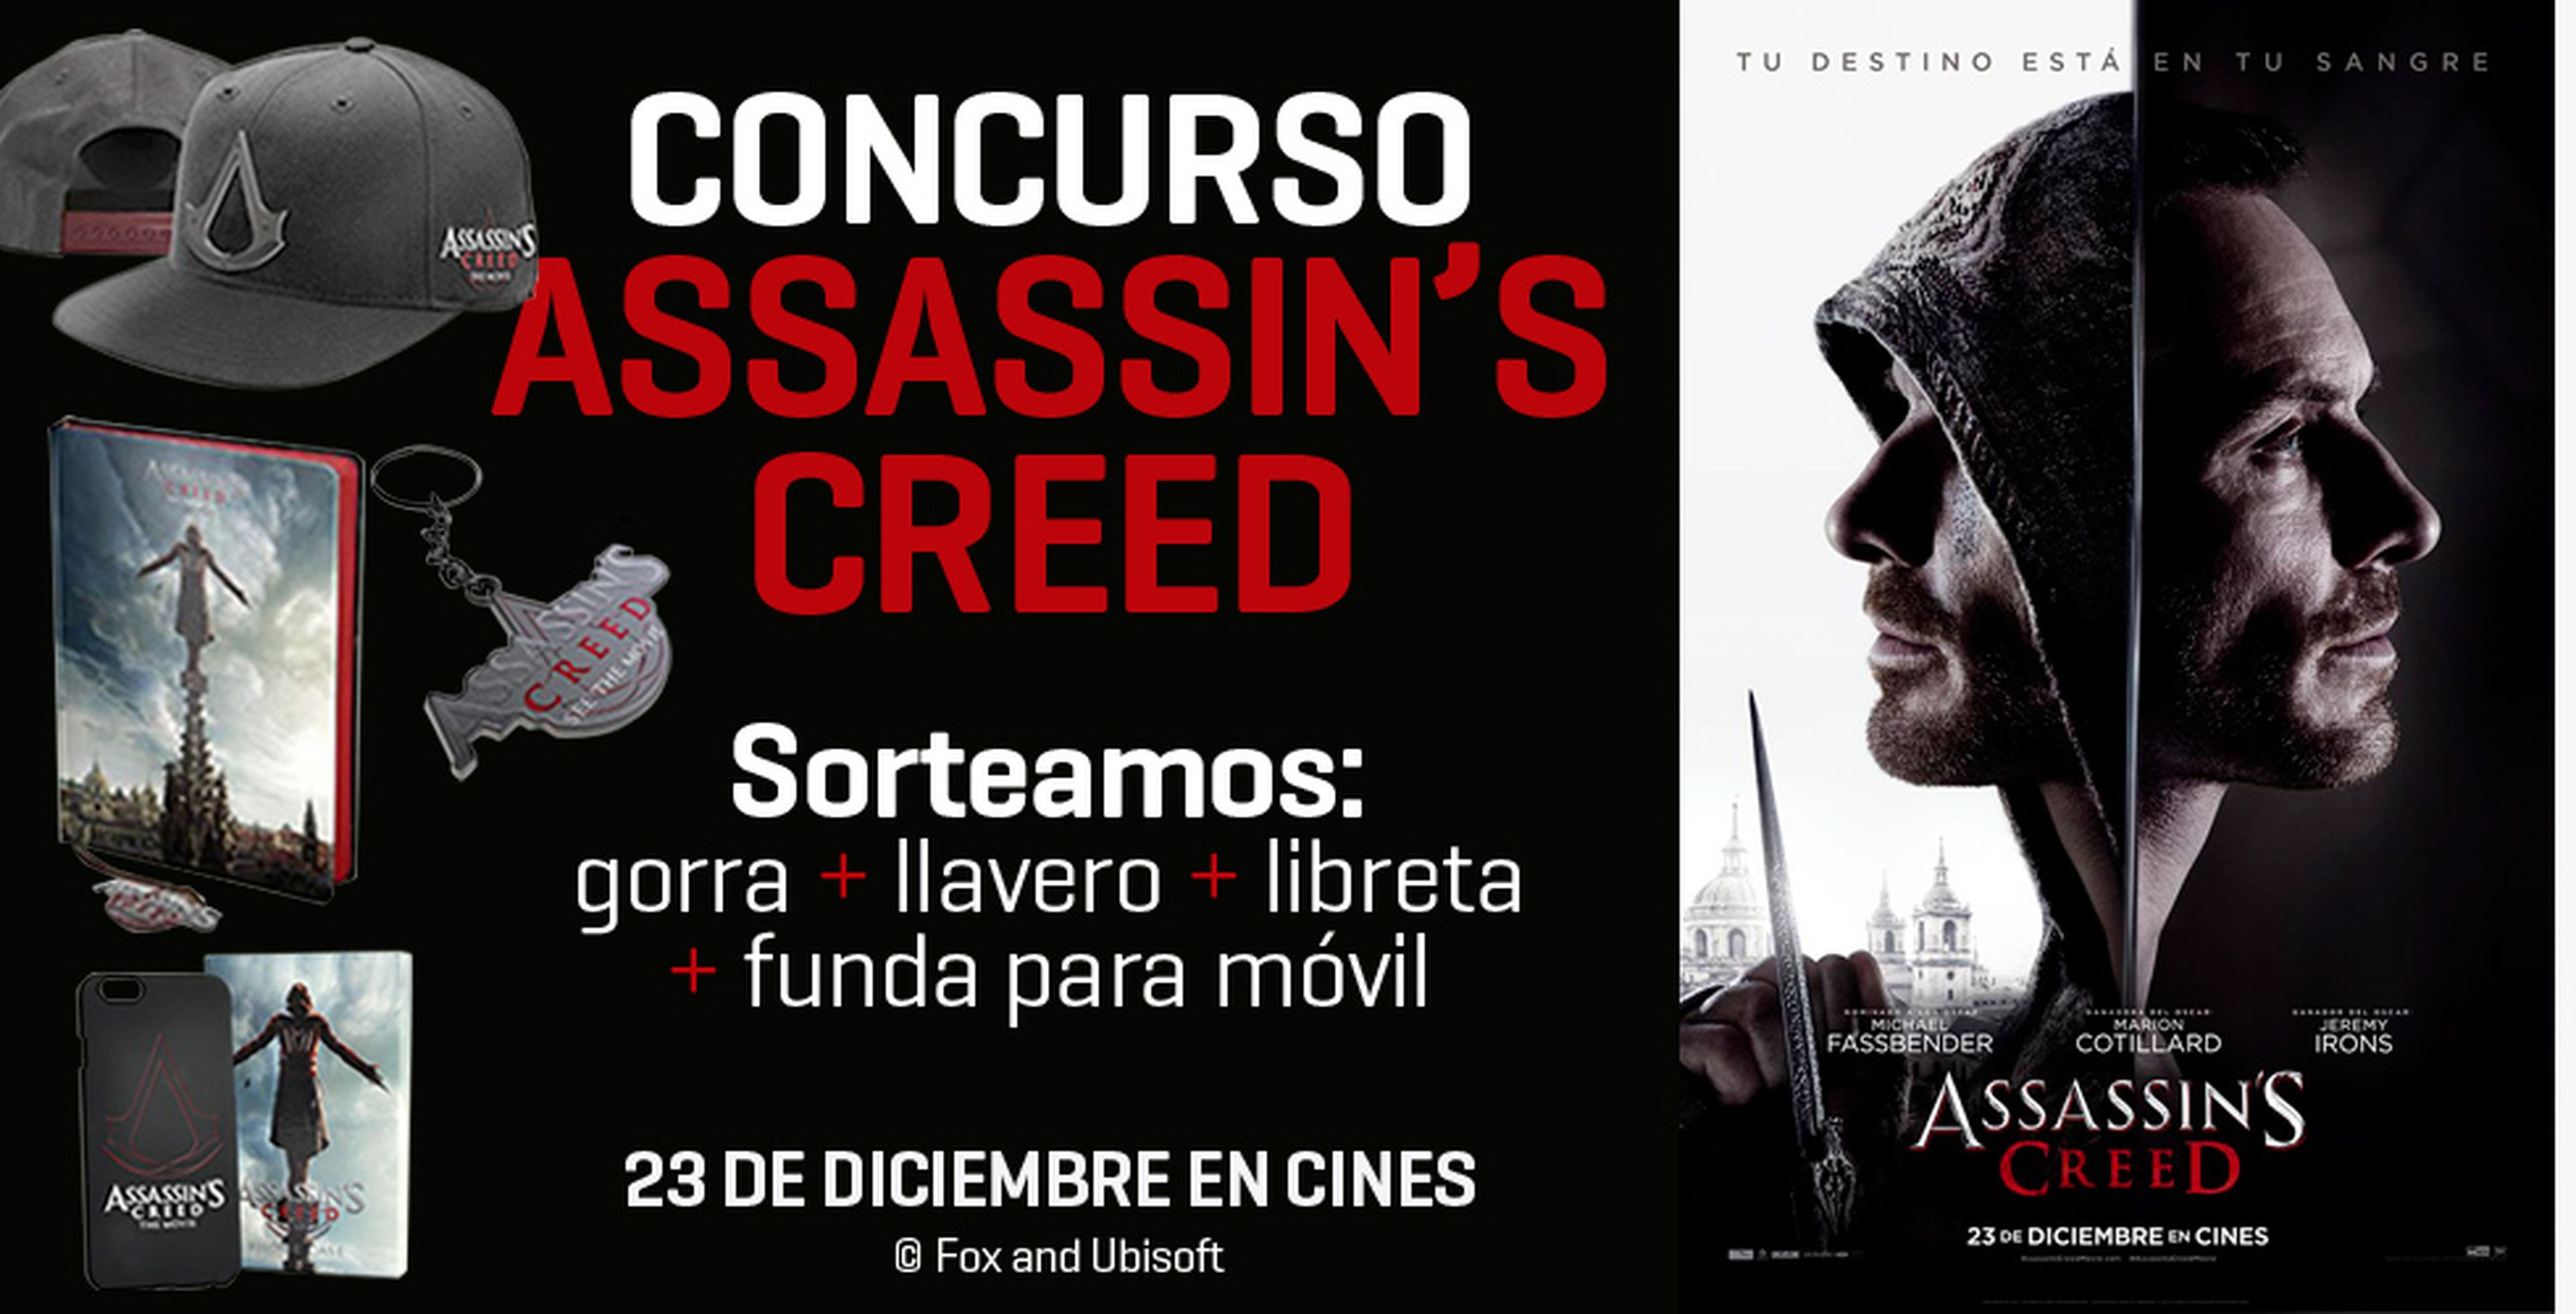 Concurso Assassin's Creed